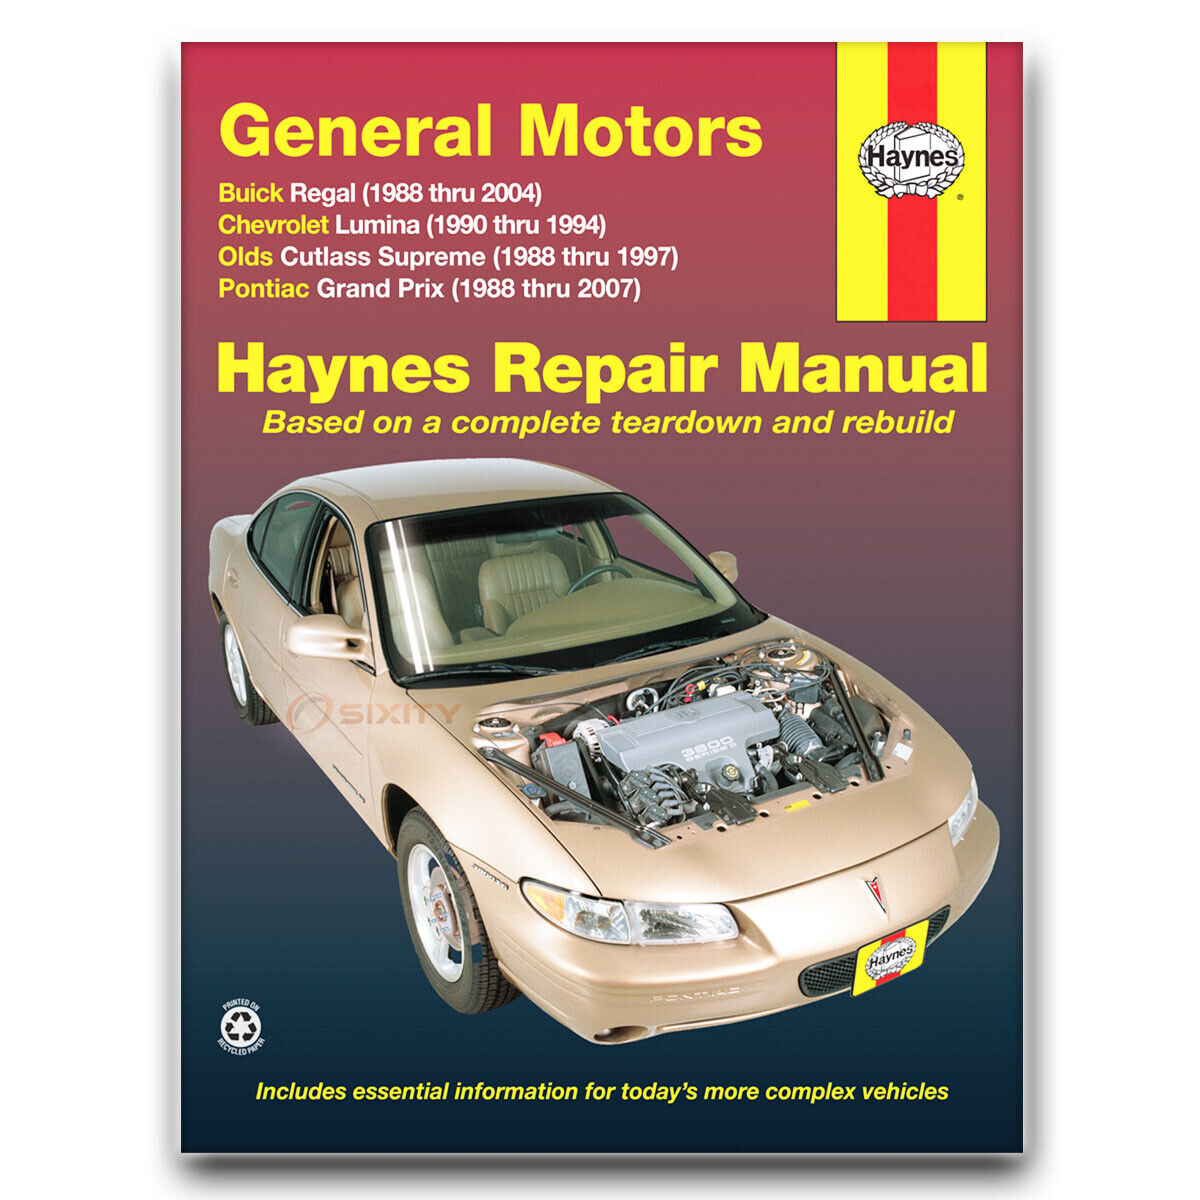 Haynes Repair Manual for 1988-2007 Pontiac Grand Prix - Shop Service Garage dw